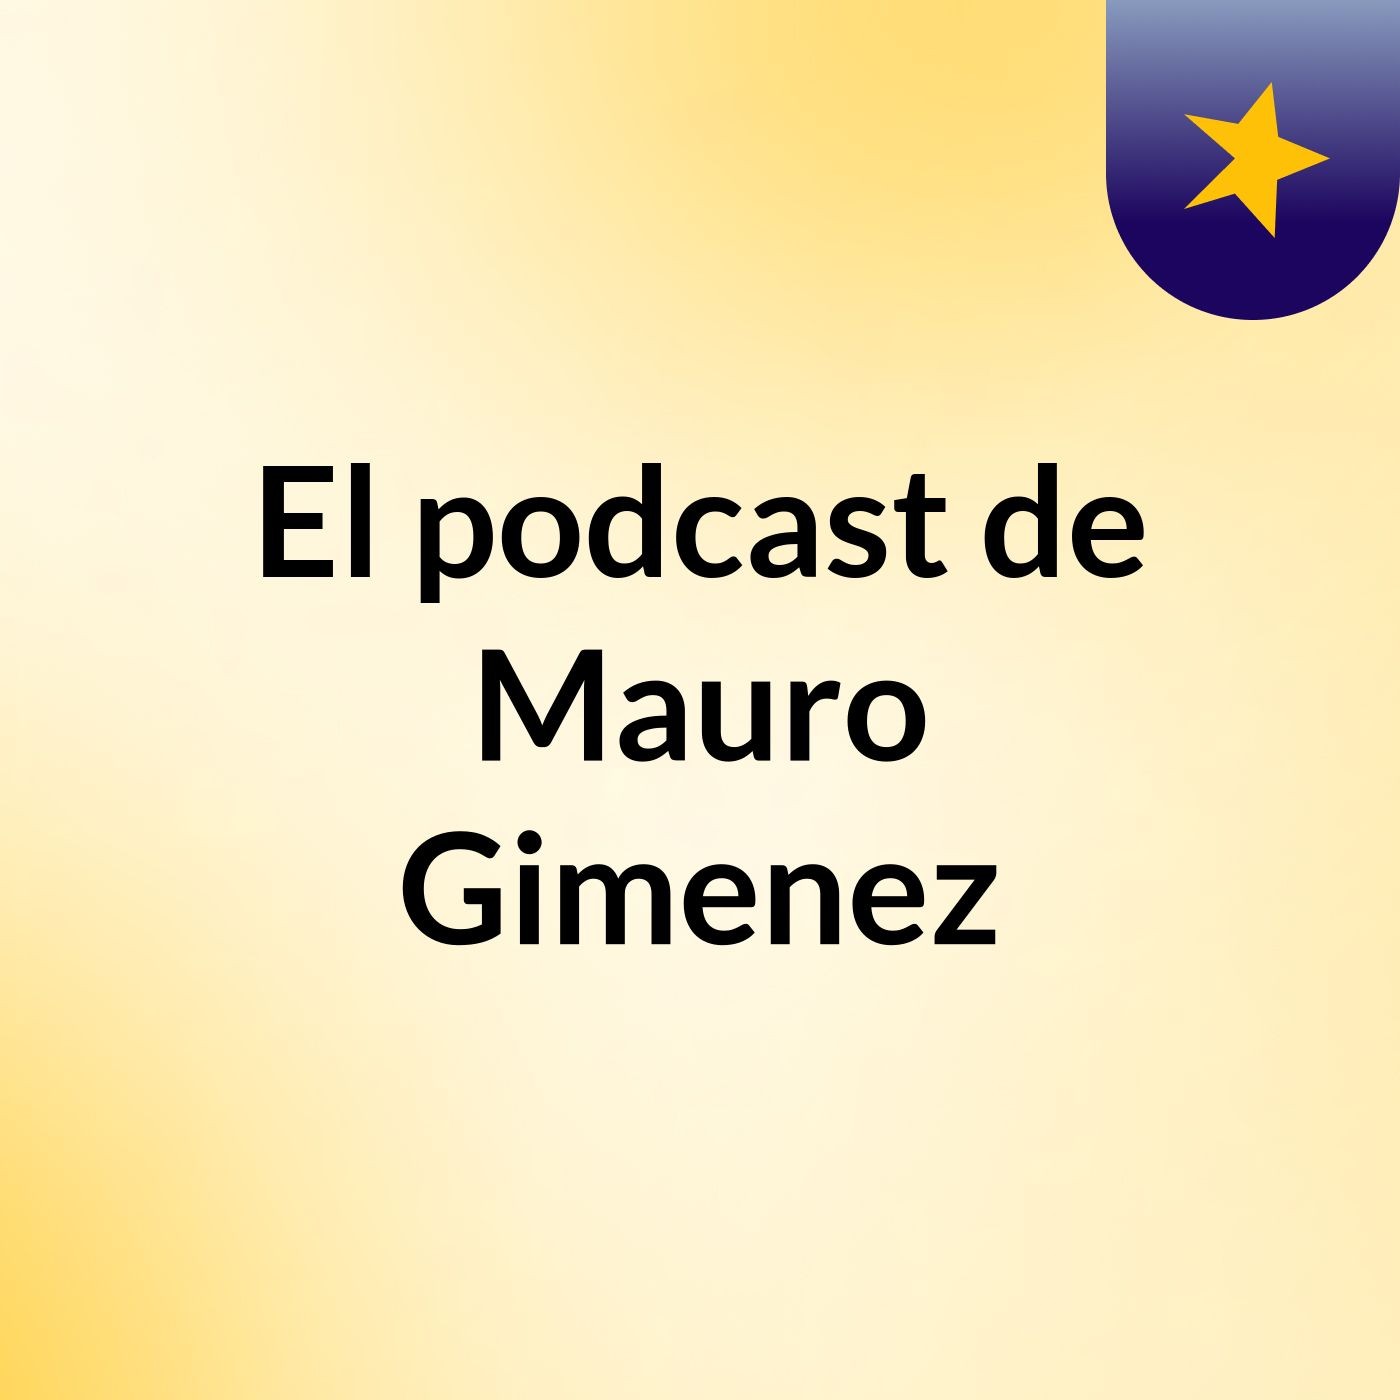 Episodio 3 - El podcast de Mauro Gimenez